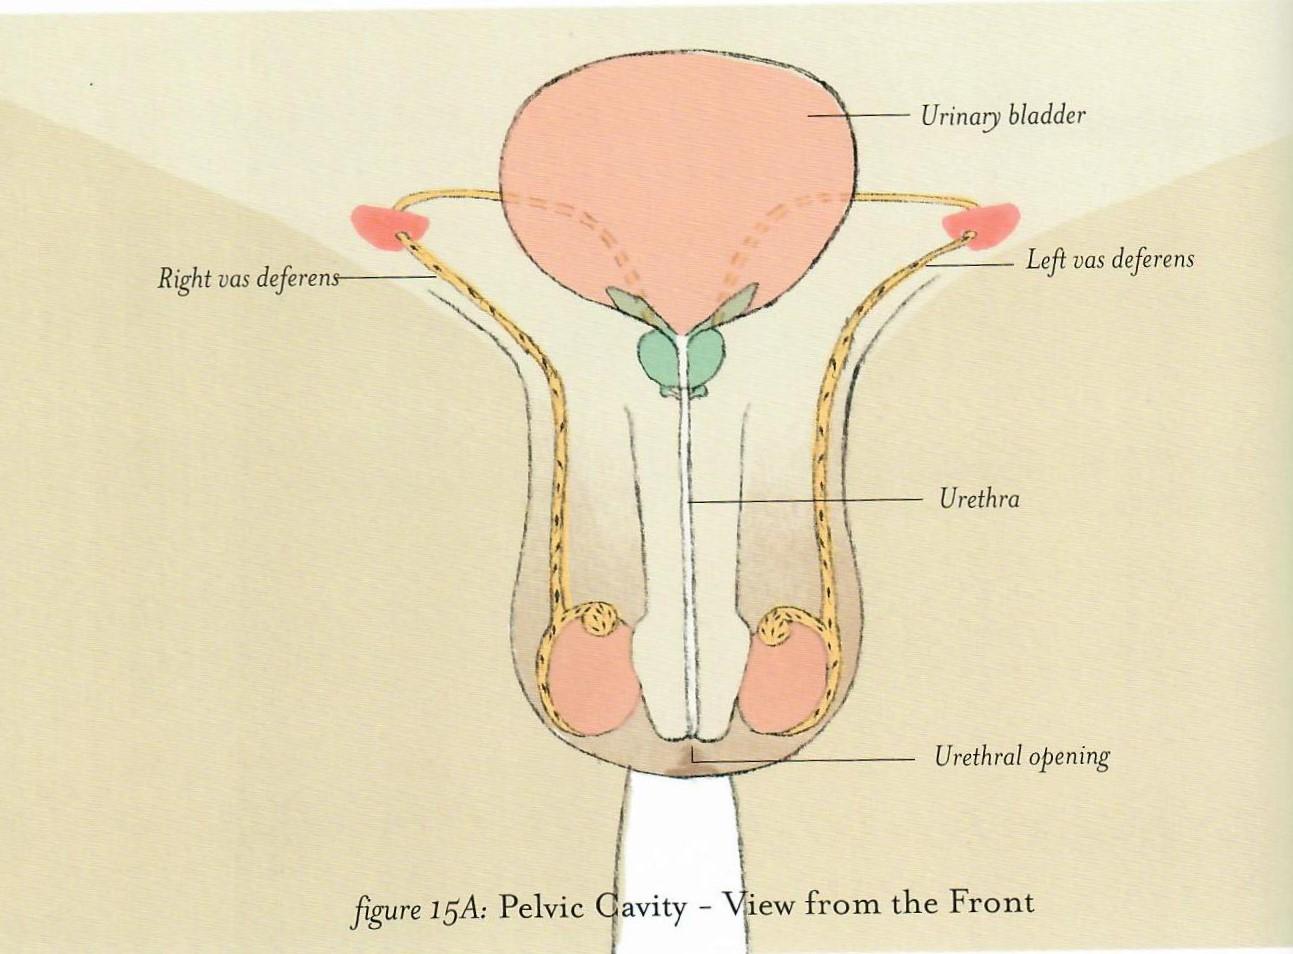 正面图展示了膀胱,尿道,尿道口和输精管